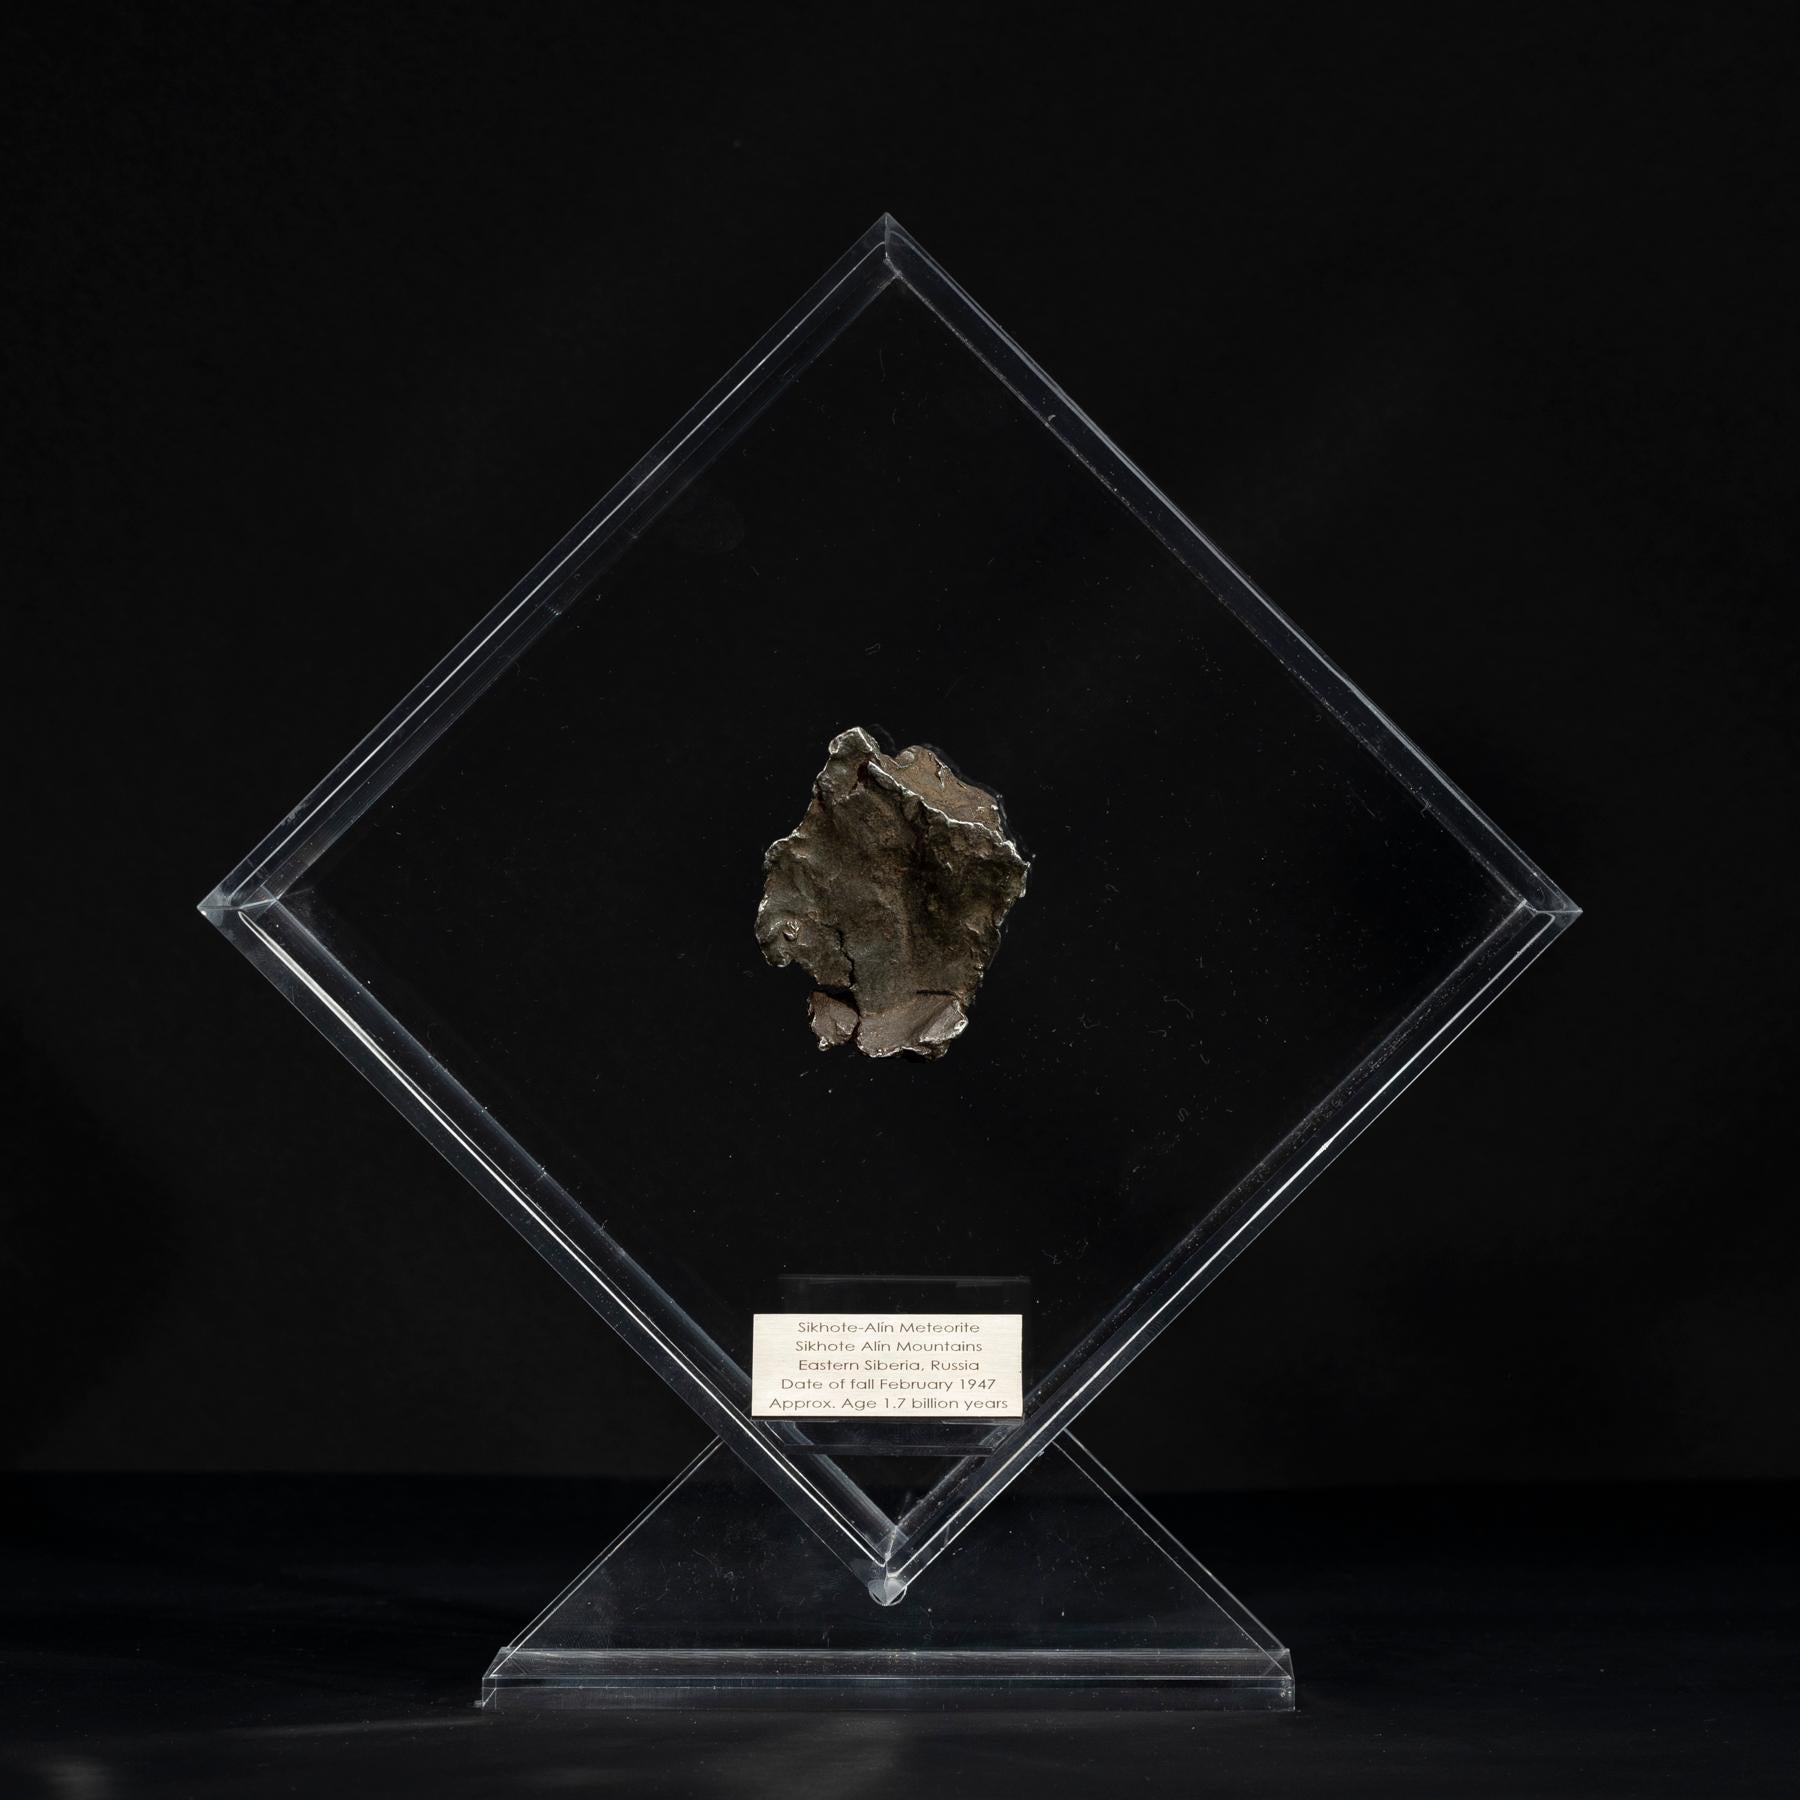 Originelles Design in einem Acryl-Display mit einem Magneten, der den Meteoriten so aussehen lässt, als würde er noch Jahre vor seinem letzten Besuch auf der Erde im Weltraum schweben. 

Sikhote Alin Meteorit
Dieser Eisenmeteorit fiel am 12. Februar